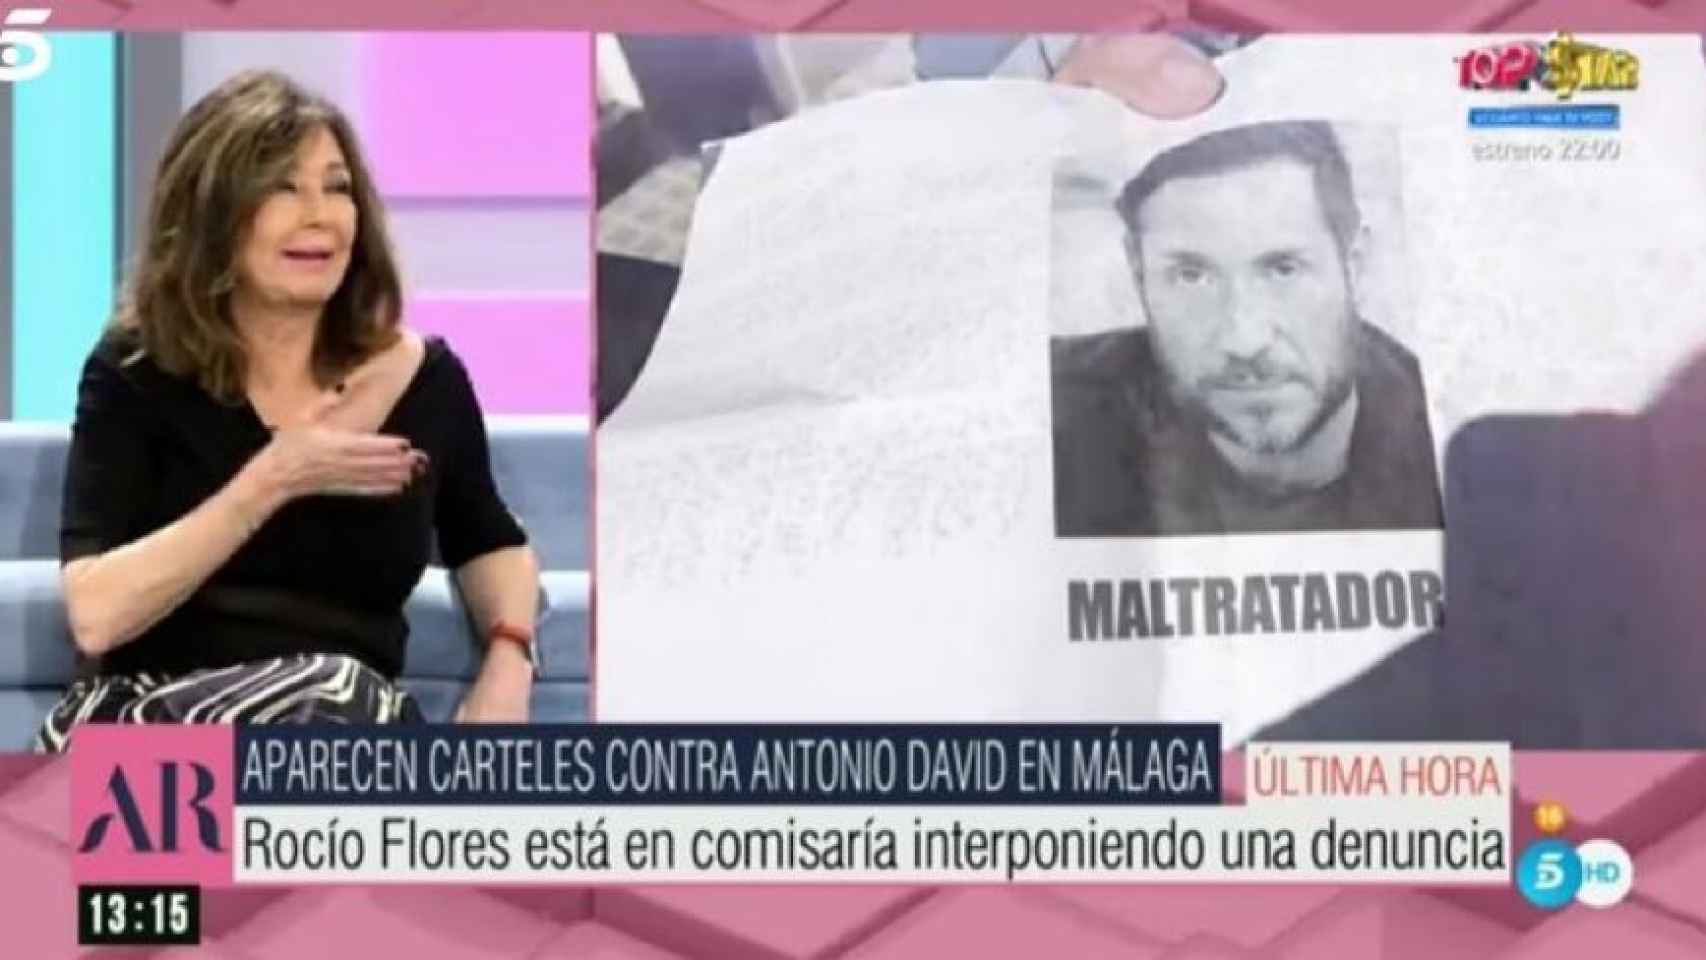 Imagen de 'El programa de Ana Rosa' con los carteles ofensivos contra Antonio David Flores.